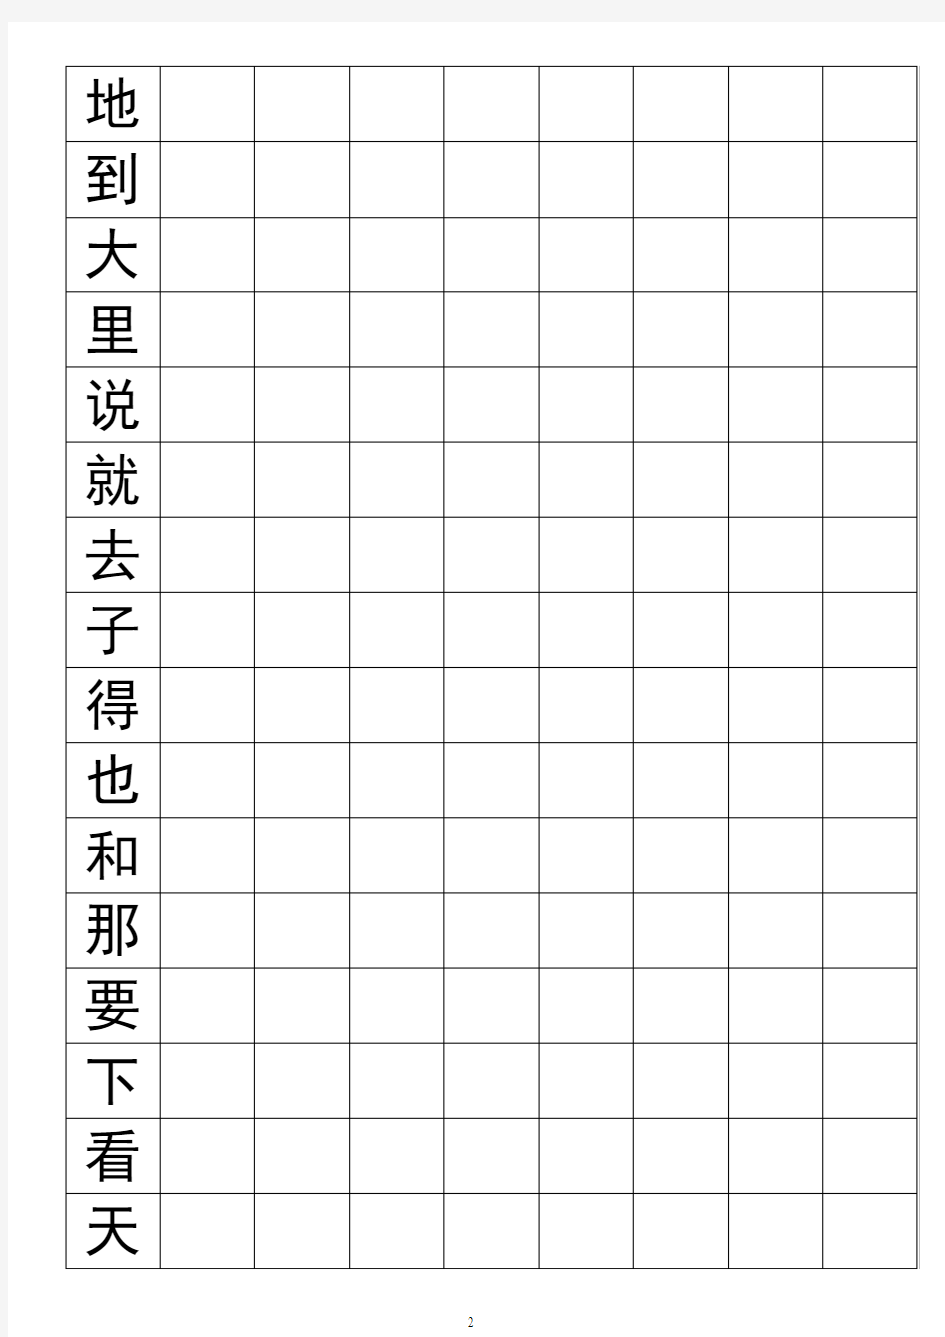 500个高频汉字练字表(方格式、黑体)